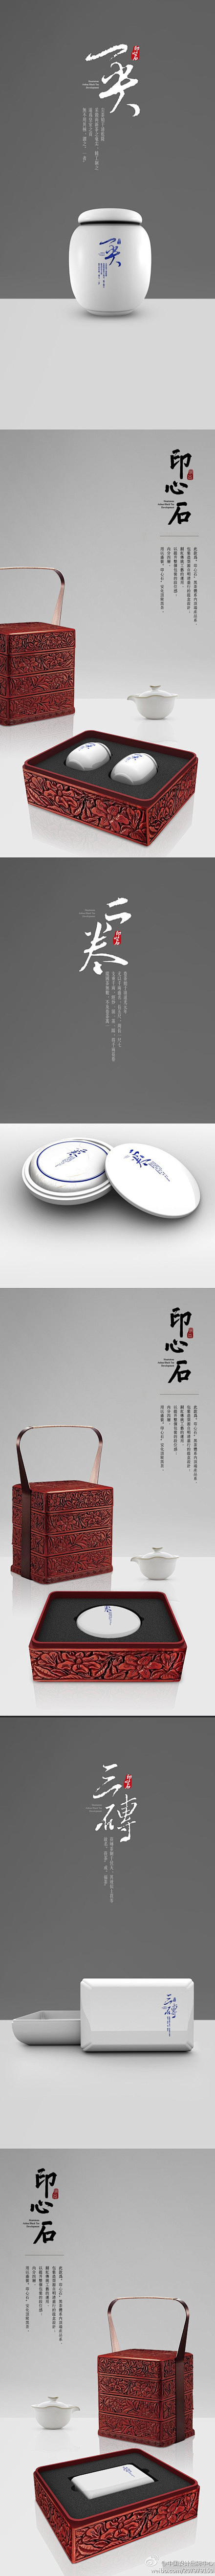 非常具有中国韵味的茶叶包装礼盒 #包装#...